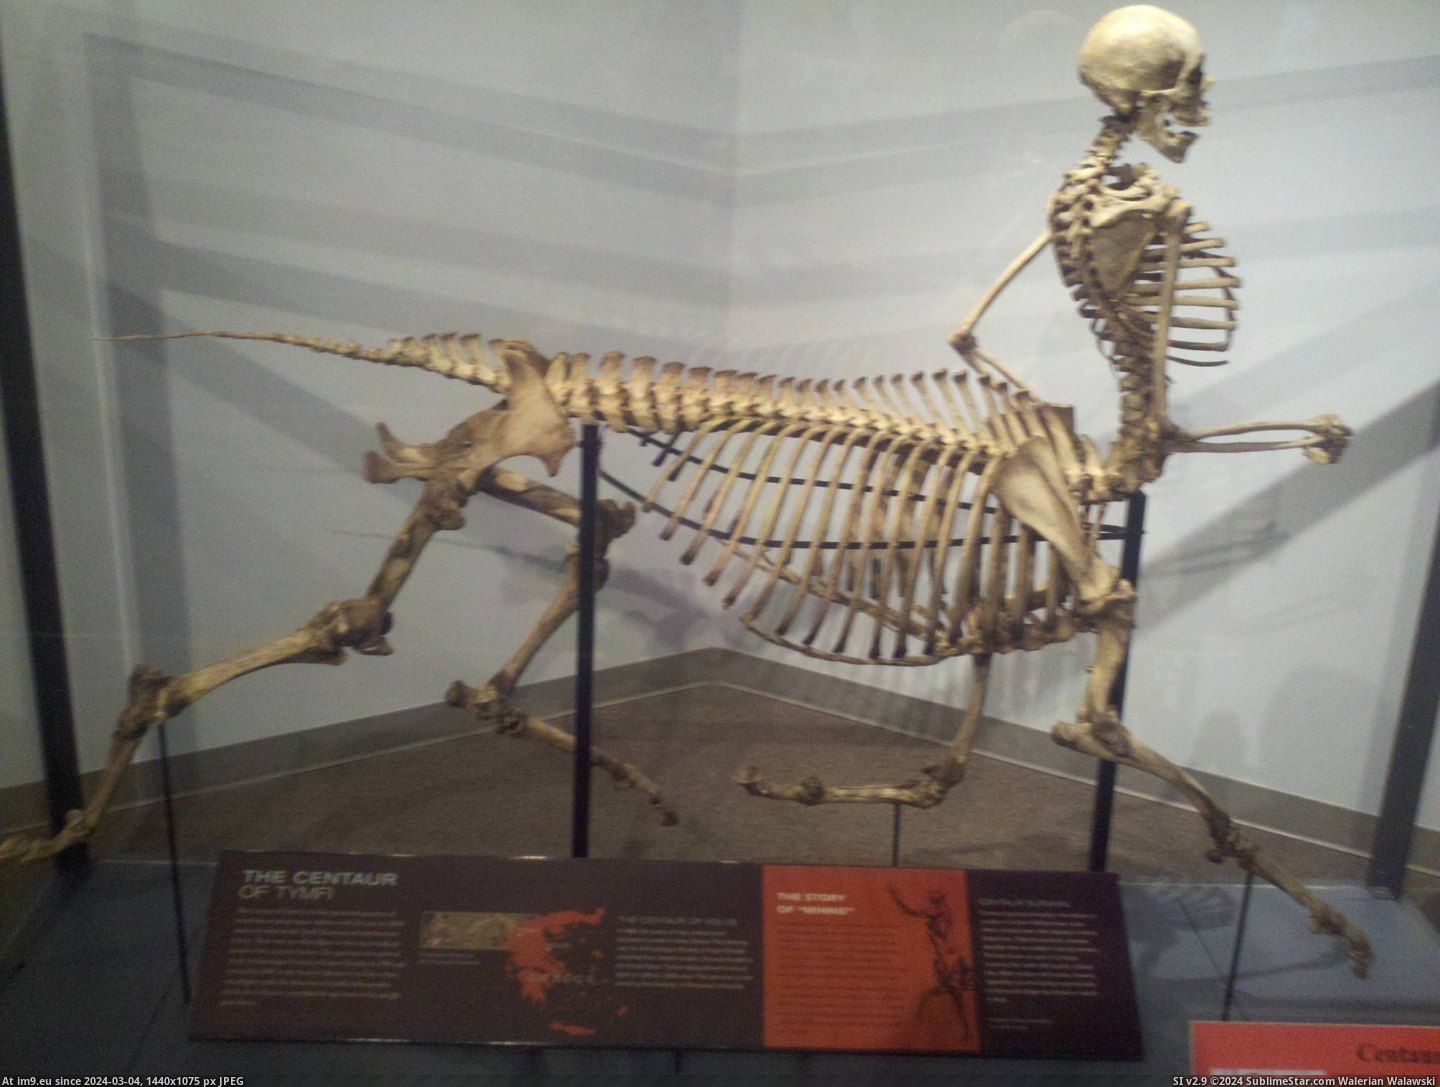 #Life #Museum #Skeleton #Centaur #Wild #Local [Pics] Centaur skeleton at my local wild life museum. Pic. (Image of album My r/PICS favs))